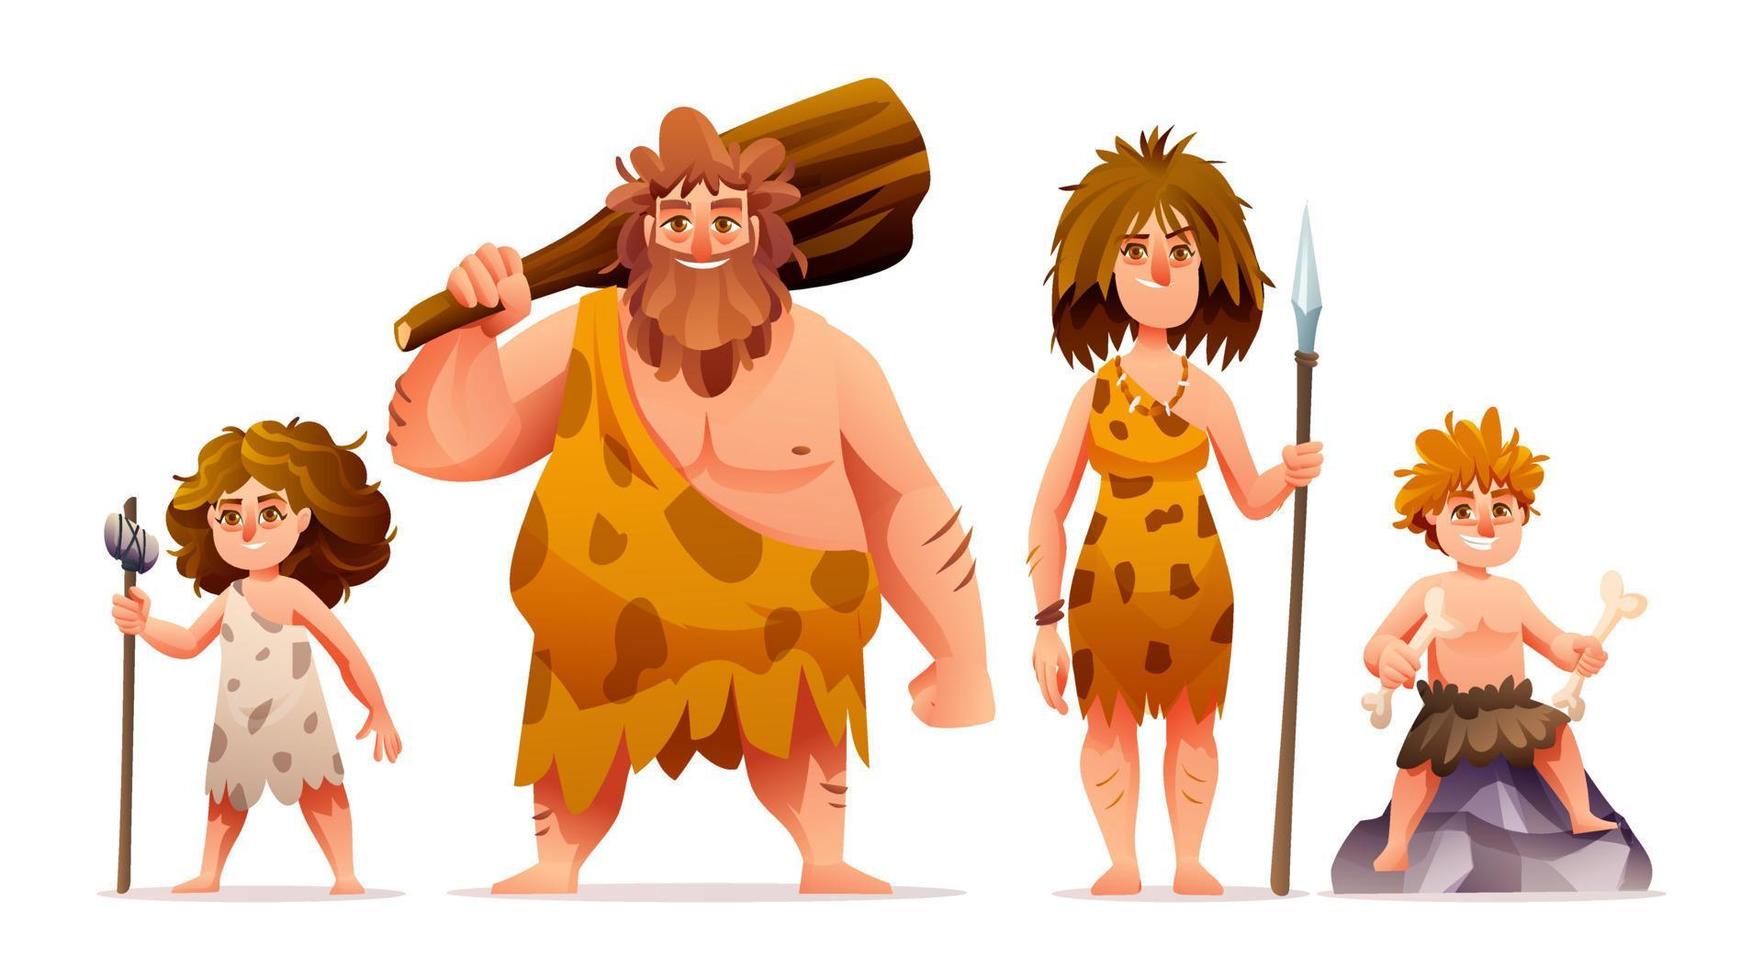 Charaktere der Urmenschen. prähistorische steinzeit höhlenmensch familienkarikaturillustration vektor